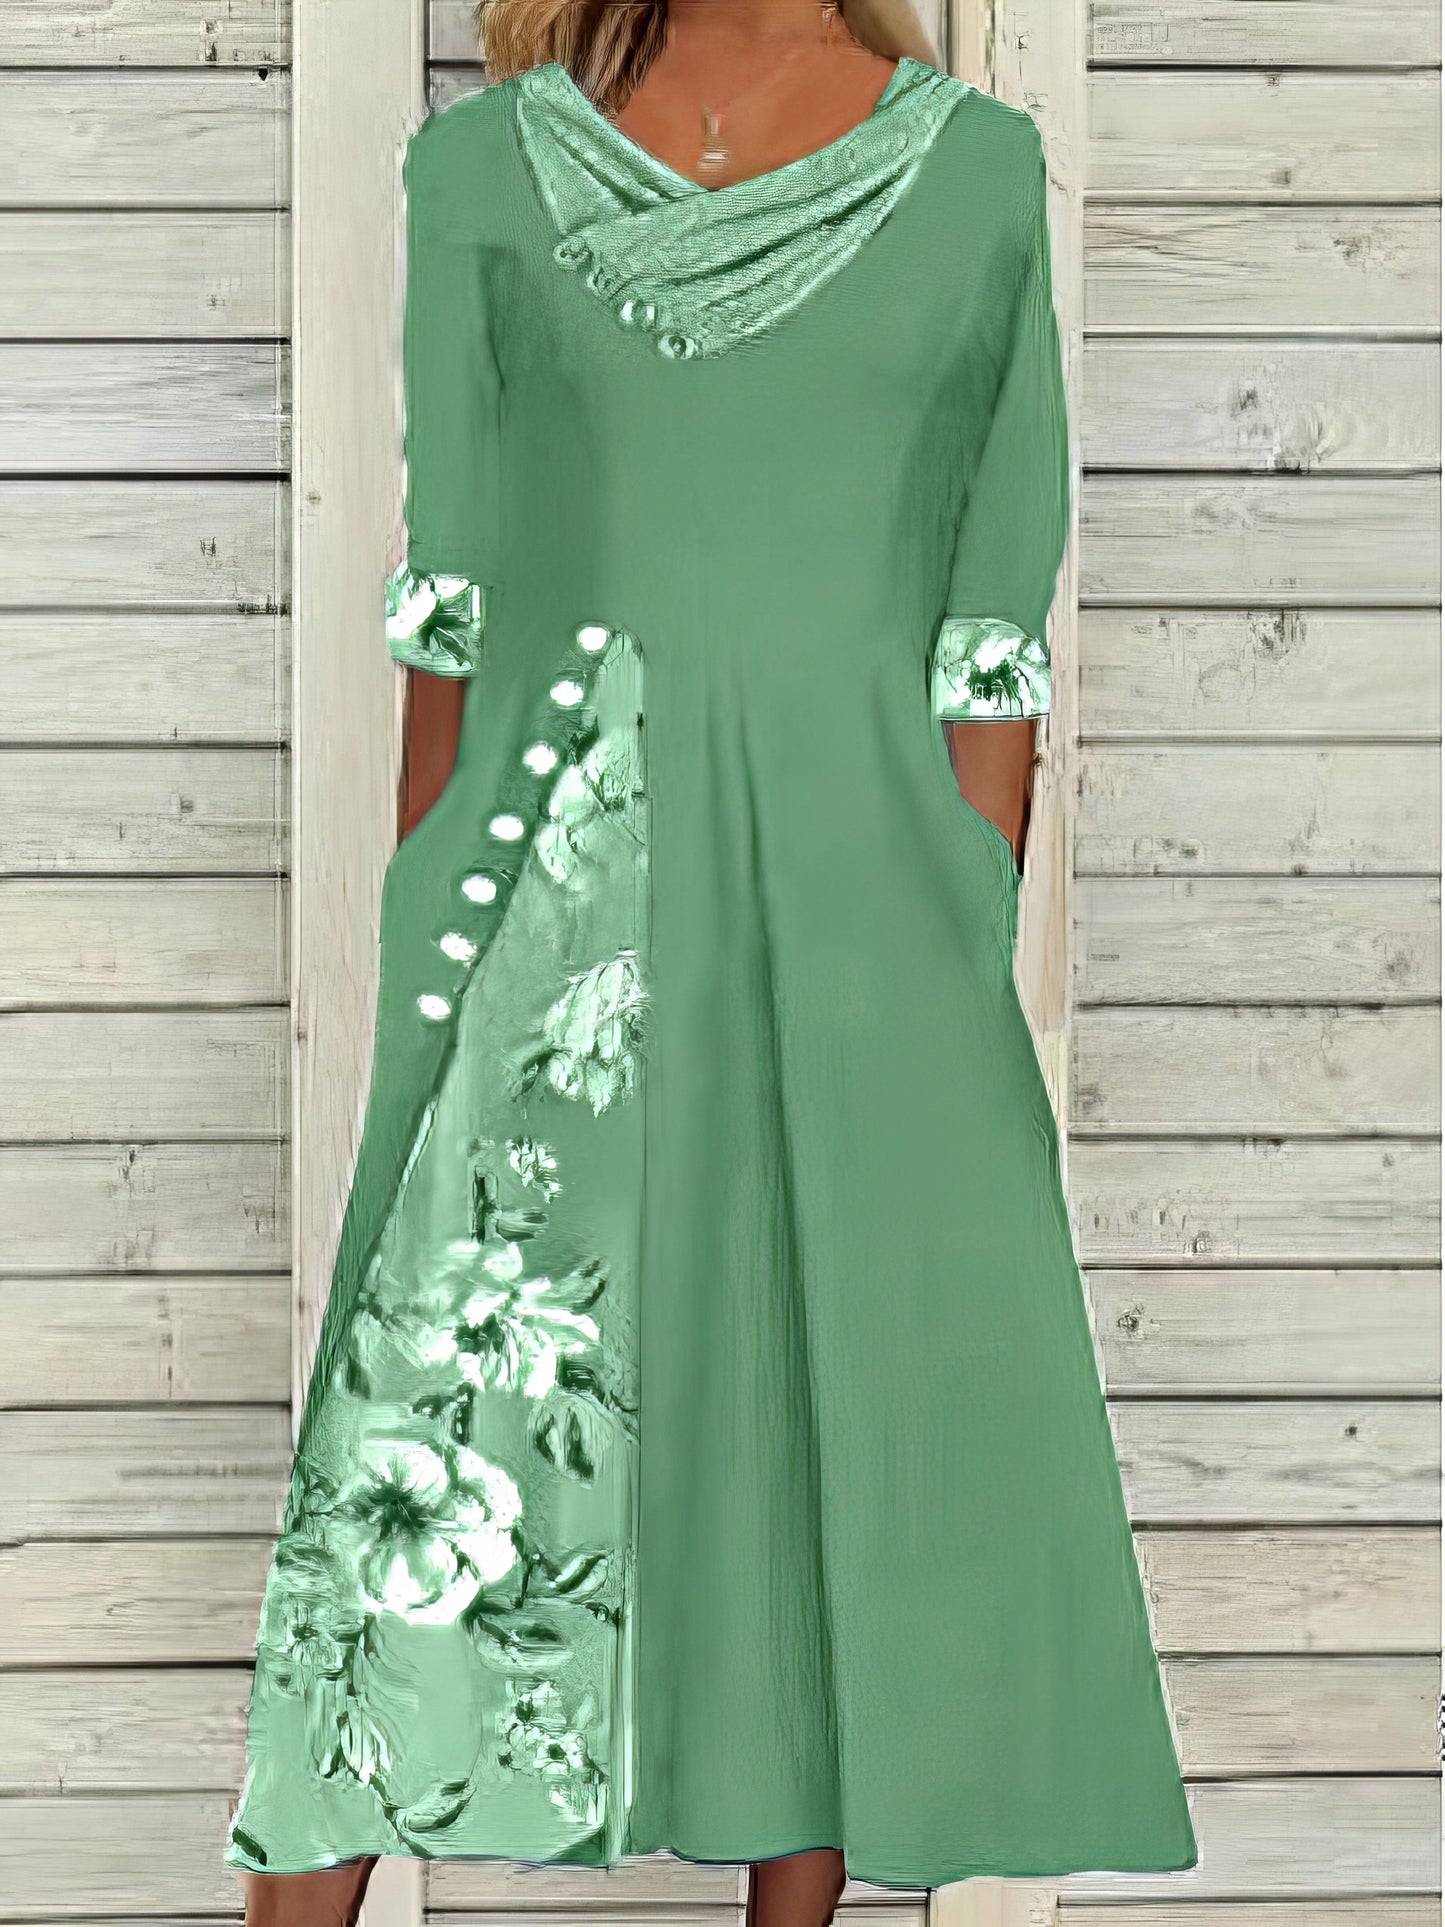 Floral Split Print Stylish Casual V Neck Midi Dress DRE2307260342GRES Green / 2(S)